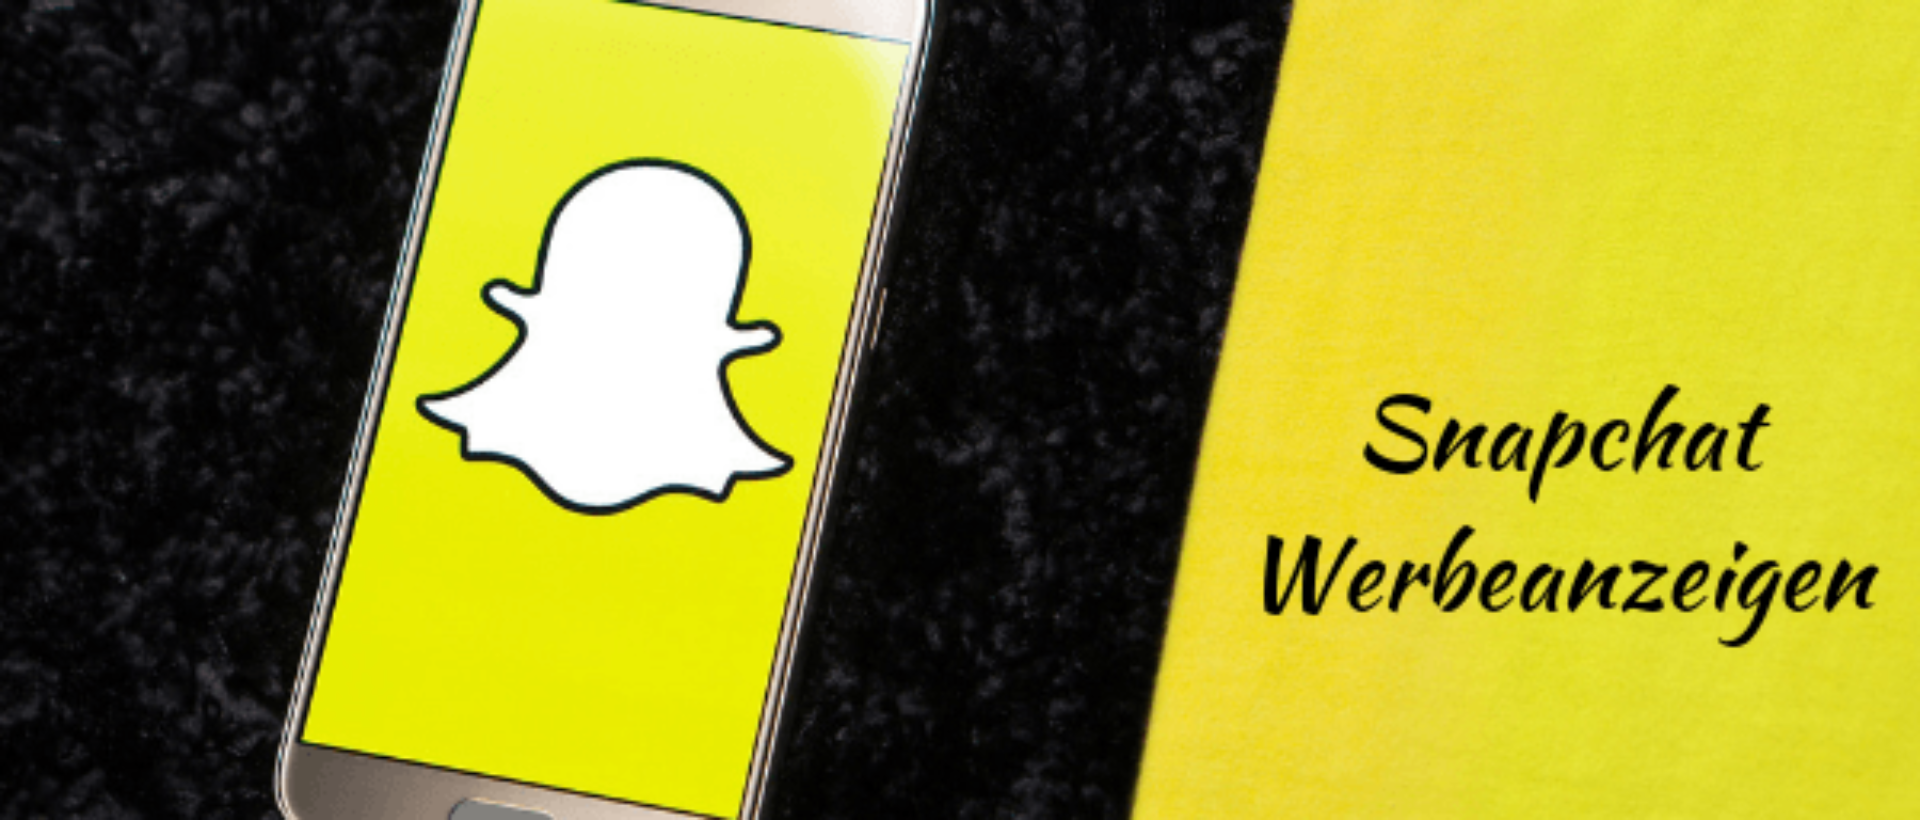 Snapchat Werbenazeigen schalten: Alle Möglichkeiten werden hier erklärt.